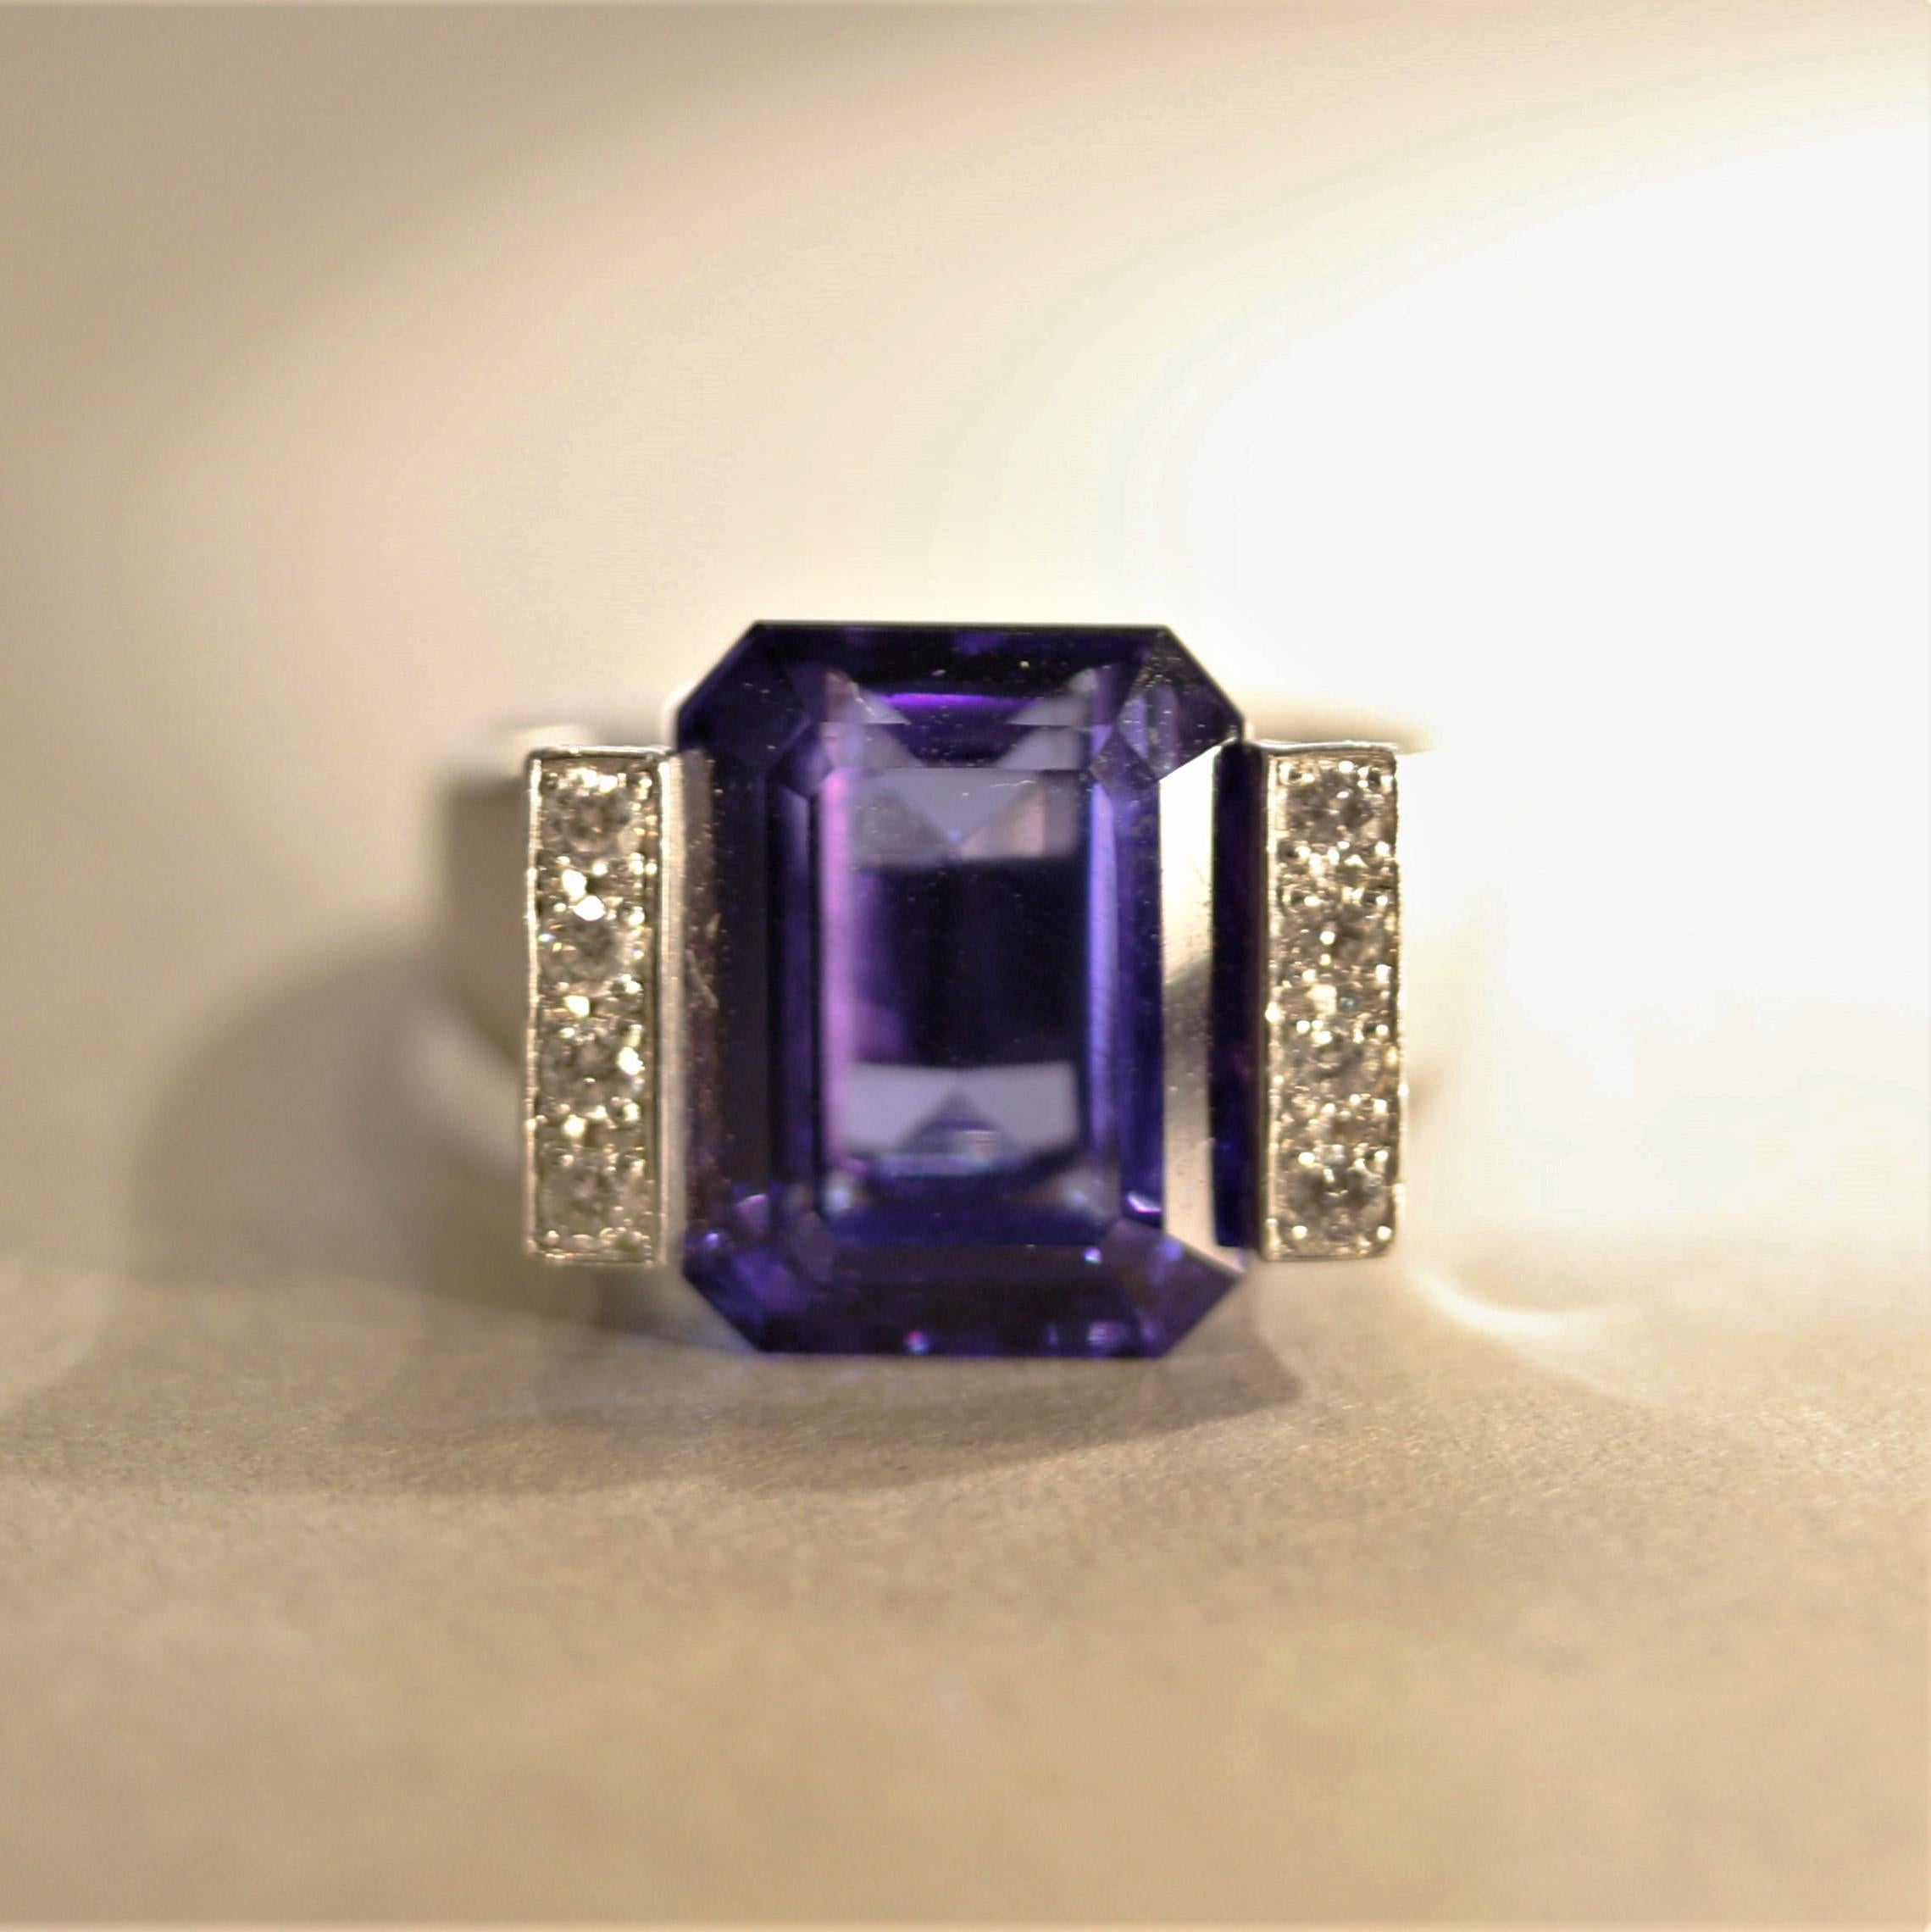 Dieser Ring in einzigartigem und modernem Design enthält einen 10,79 Karat schweren Tansanit mit außergewöhnlicher Farbe und Klarheit. Es handelt sich um einen Smaragdschliff mit einer intensiven purpurblauen Farbe, die mit den feinsten Saphiren